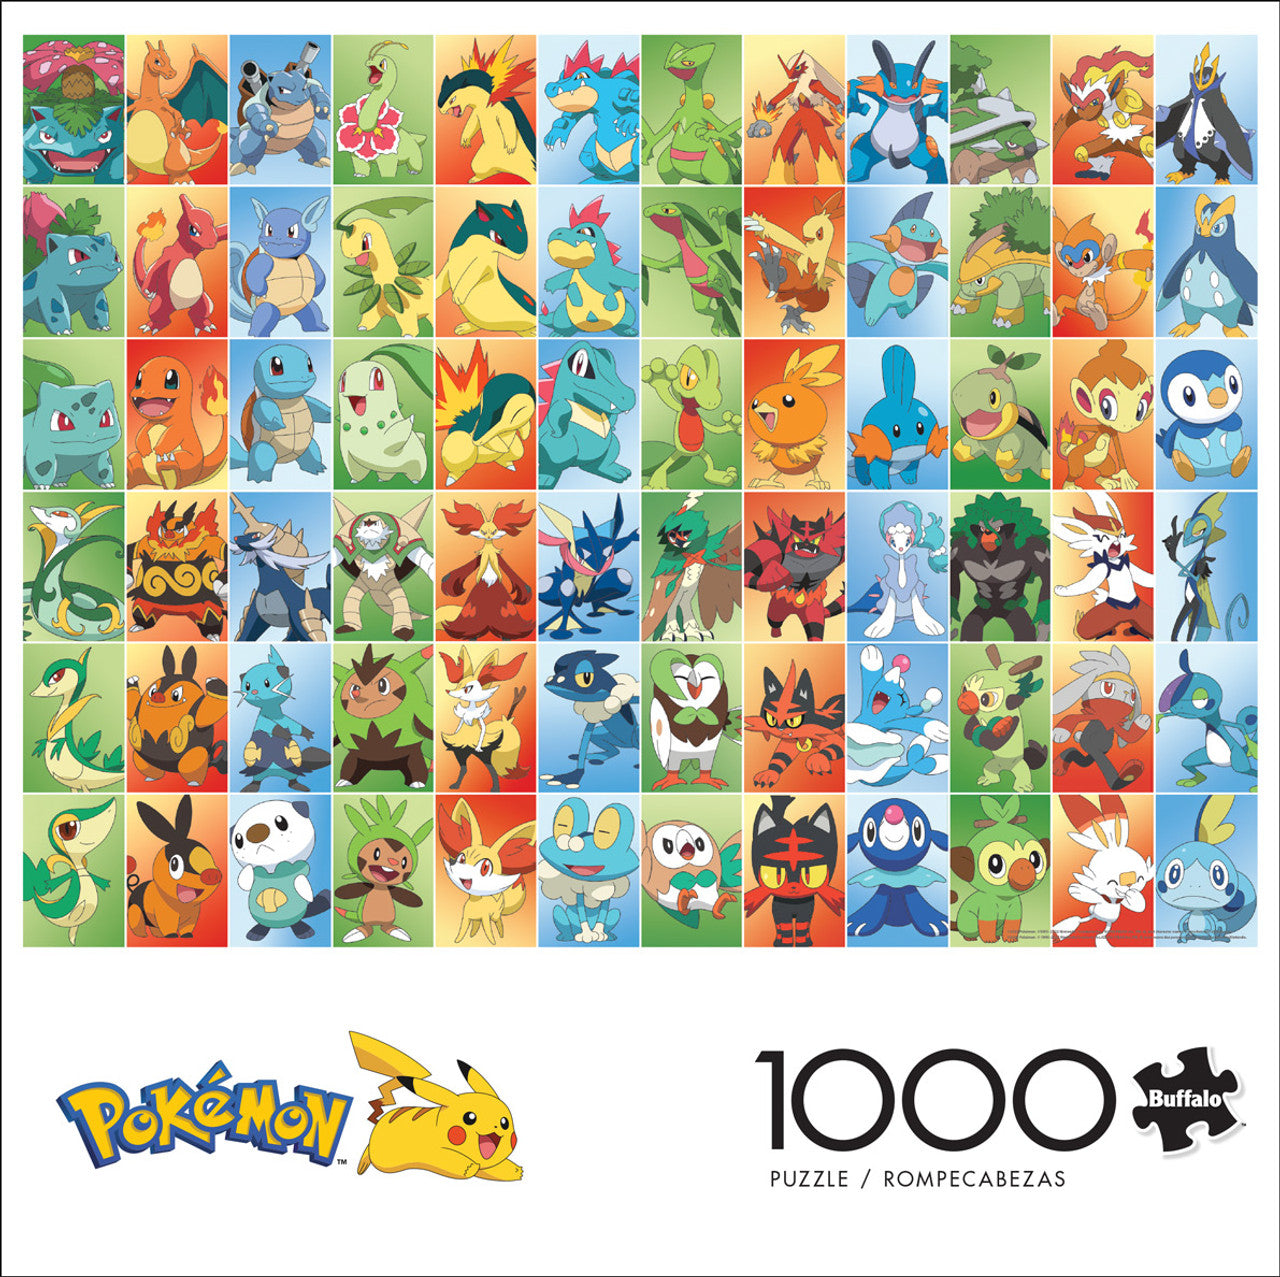 Pokemon Puzzle 1000 Piece Factory Shop